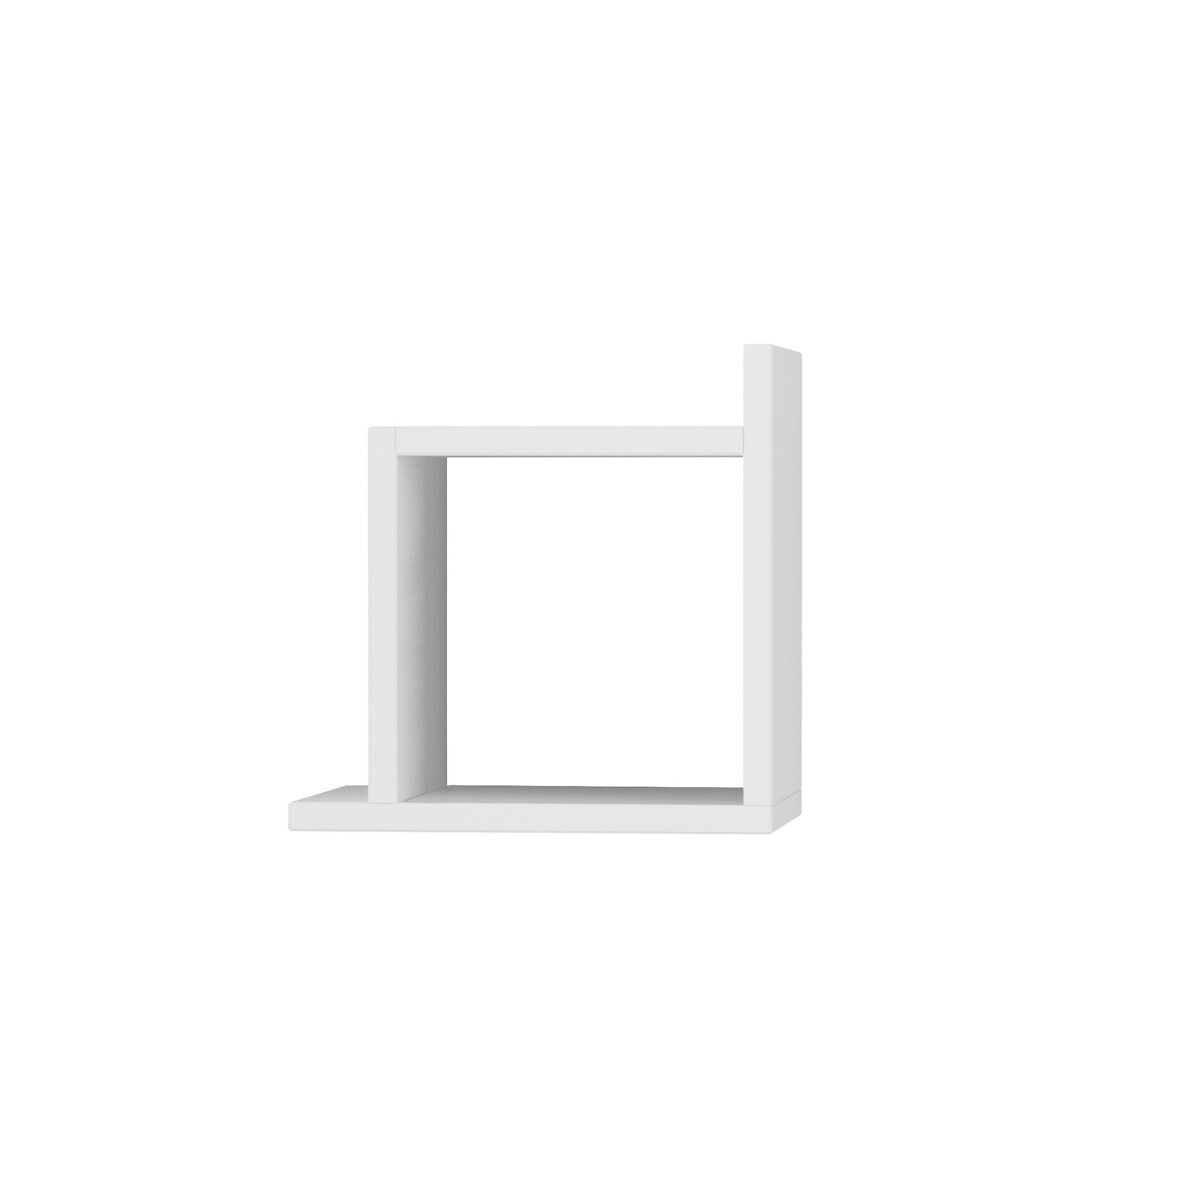 Фигурная Настенная полка BOX SHELF единый размер белый LaRedoute - фото 1